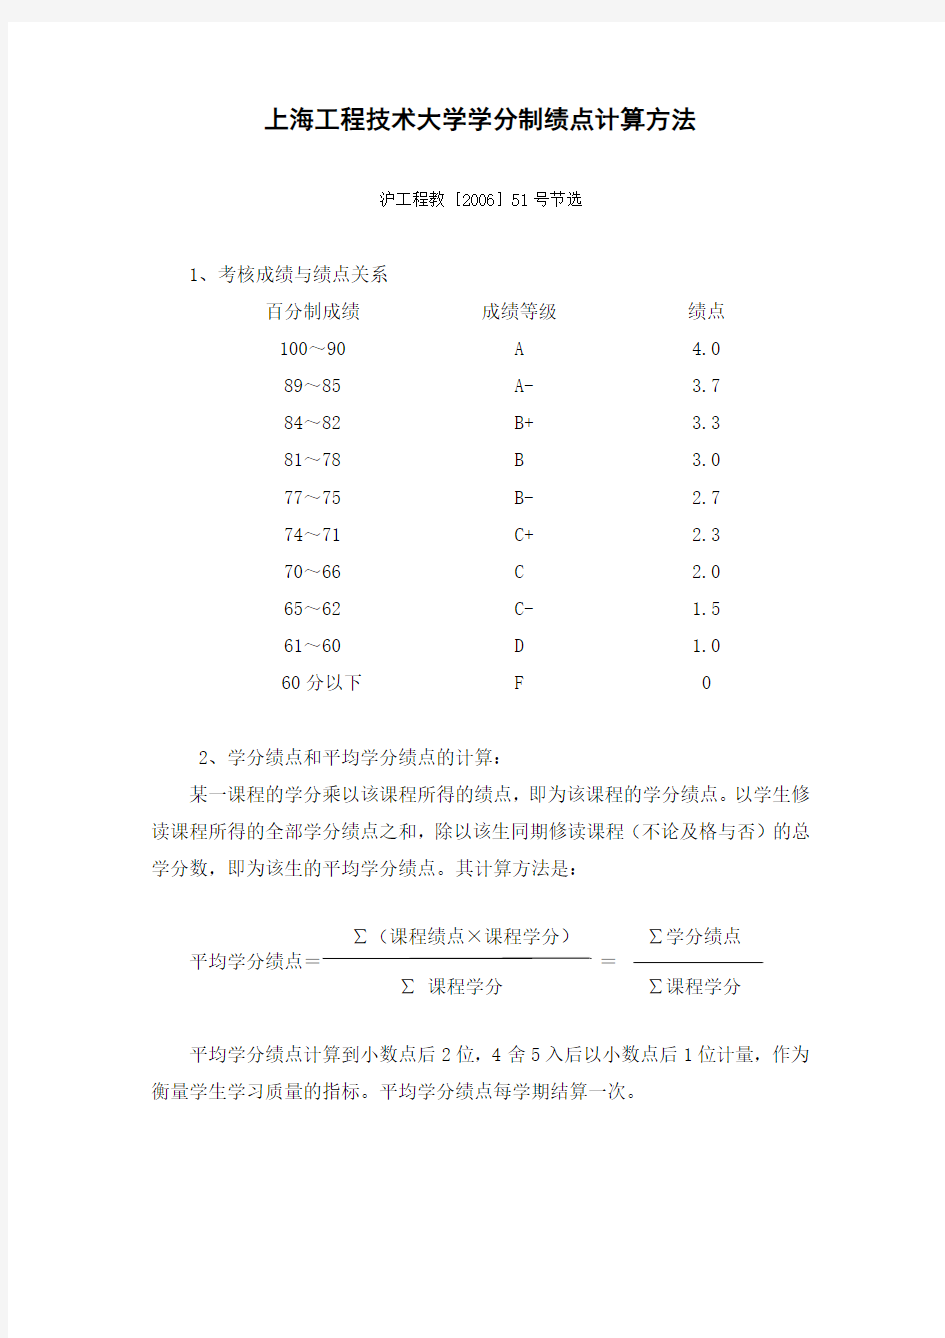 上海工程技术大学学分制绩点计算方法